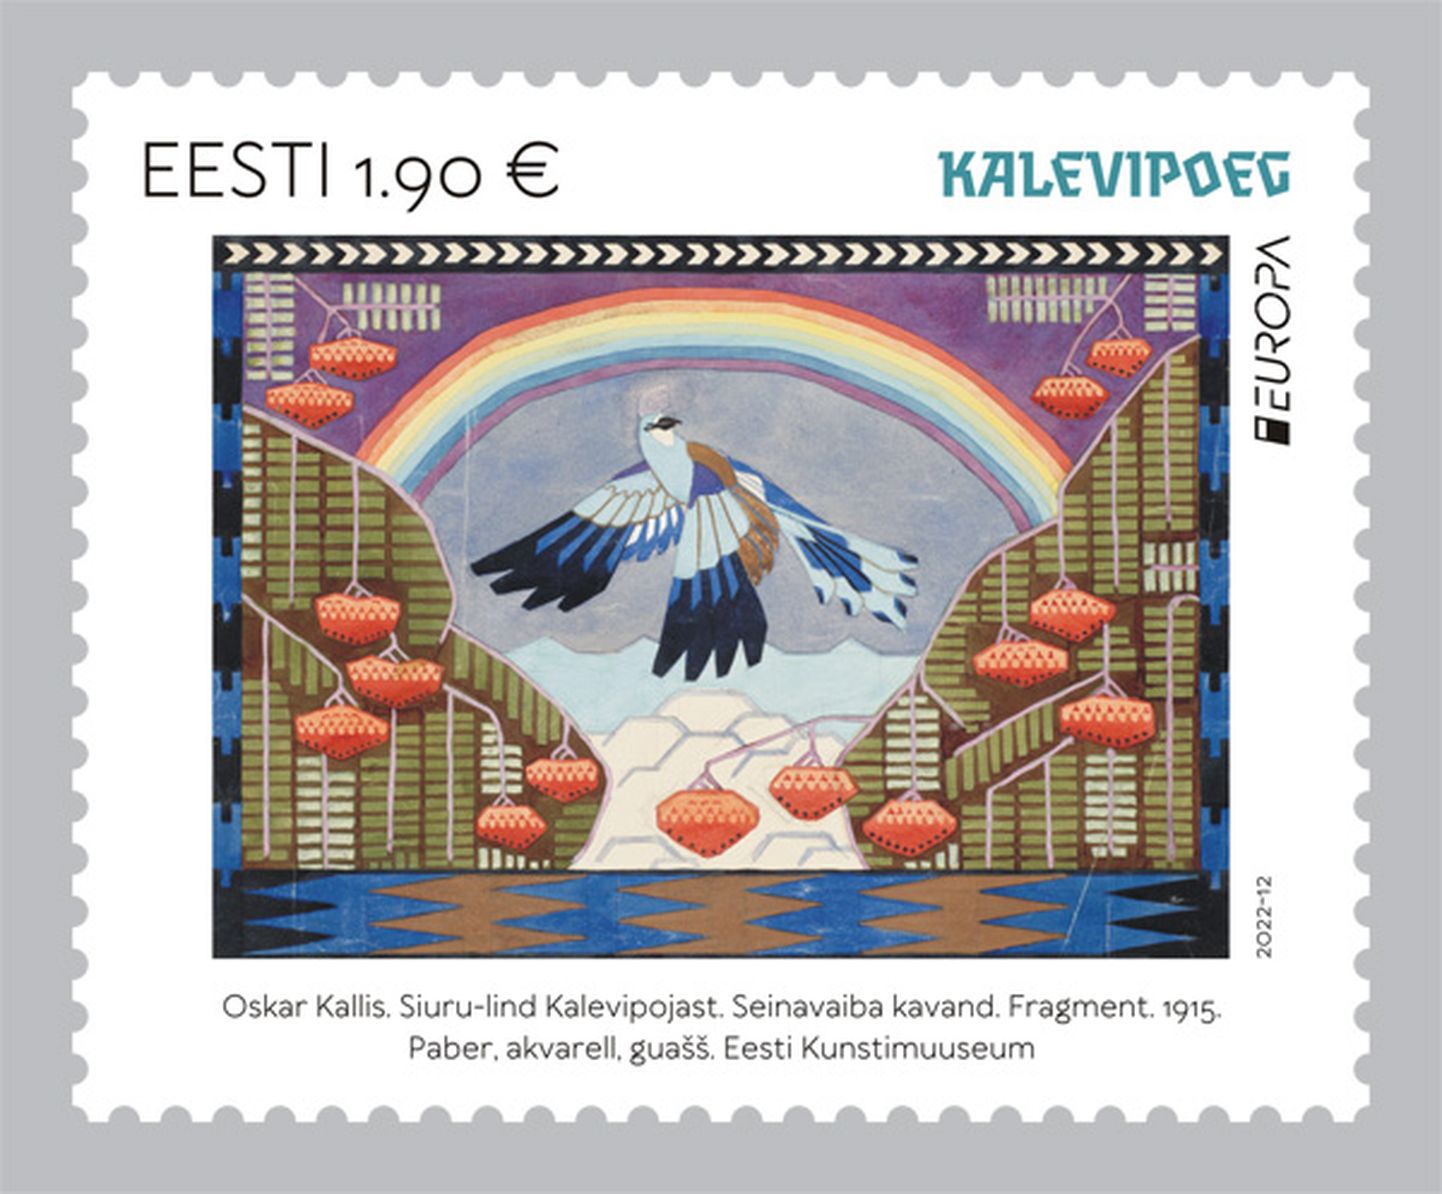 Выходят две новые почтовые марки серии «Европа», которая в этом году посвящена историям и мифам.